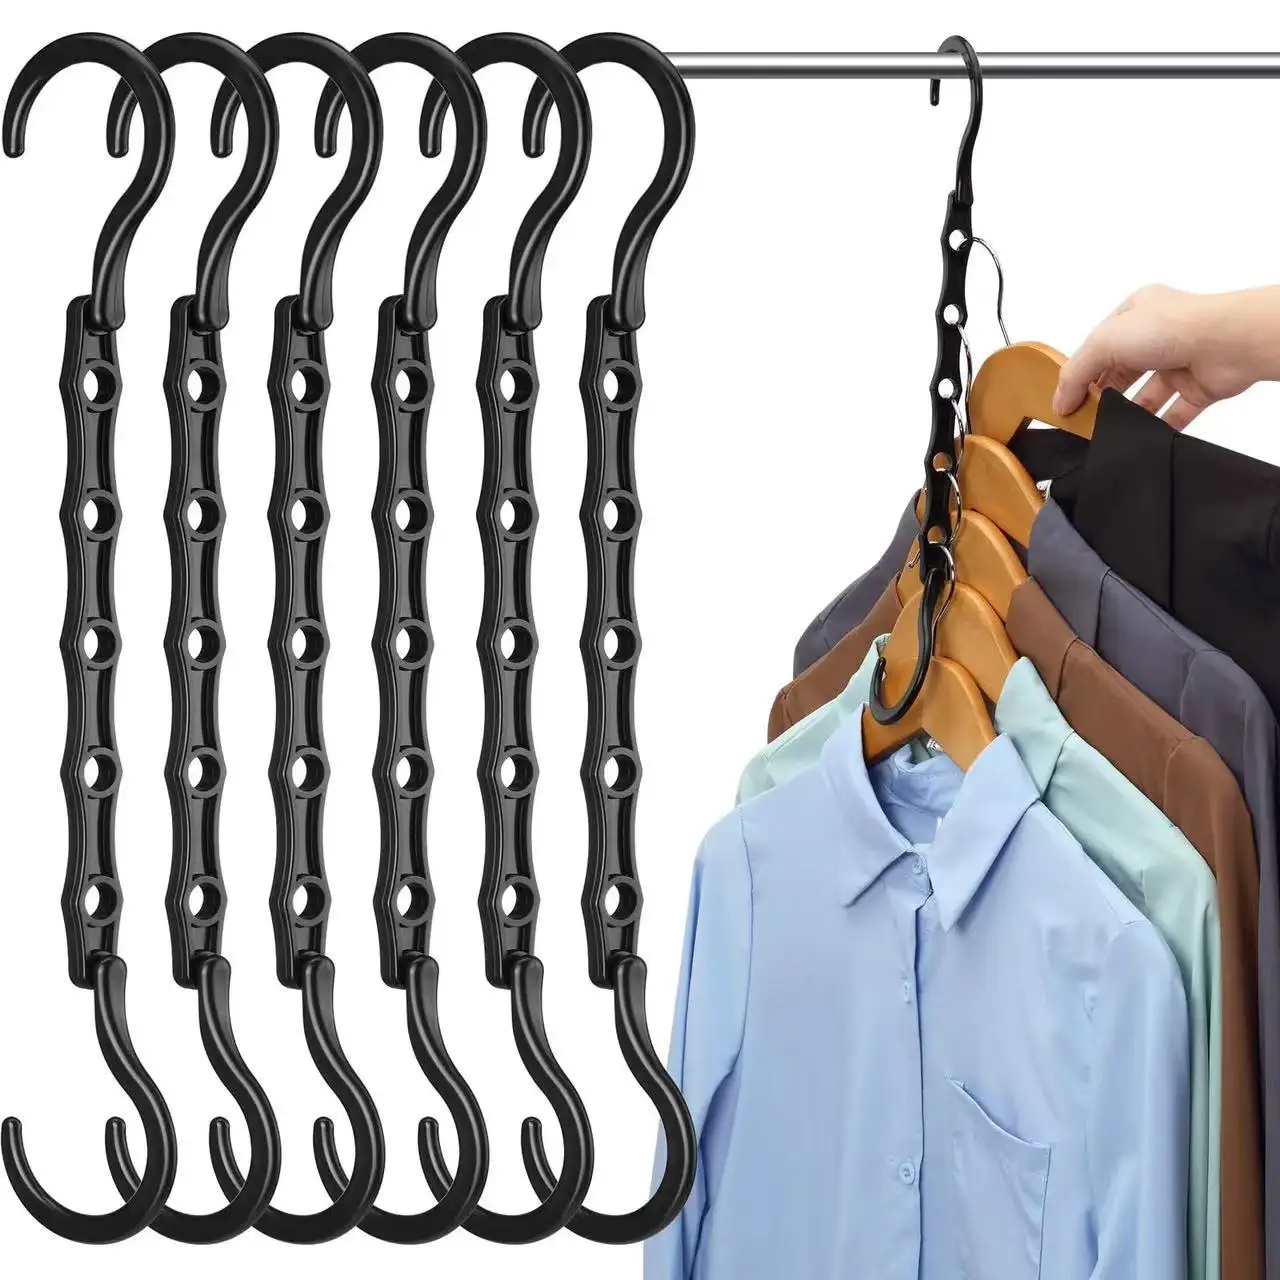 Économise de l'espace crochet magique en plastique cintre connecteur garde-robe vêtements organisateur crochets pour vêtements